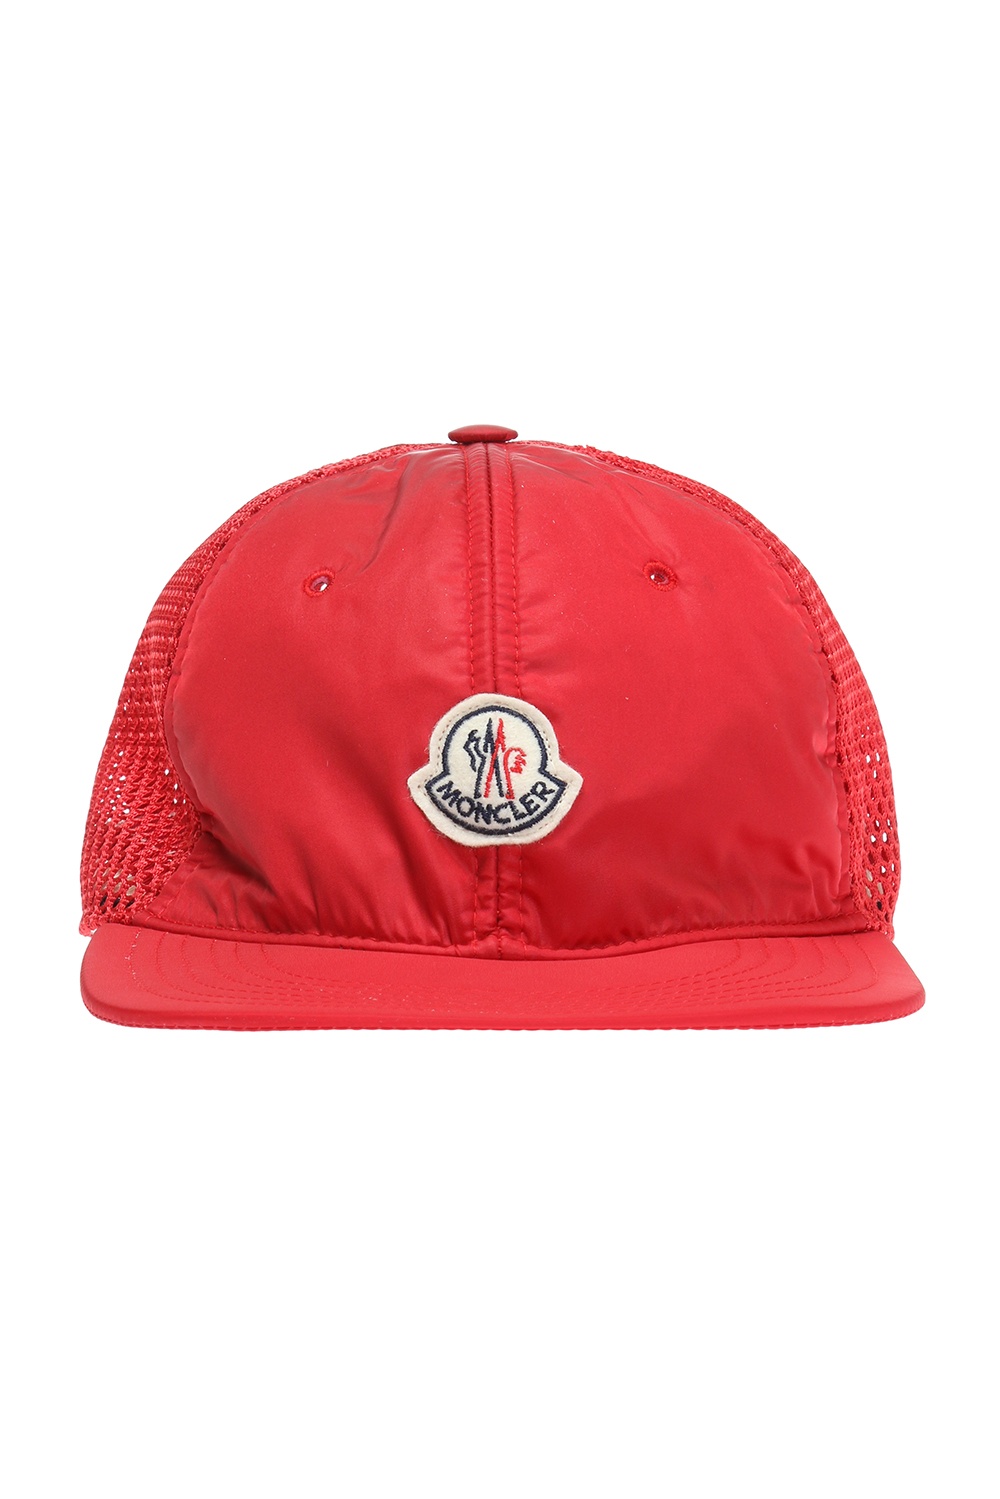 moncler red cap